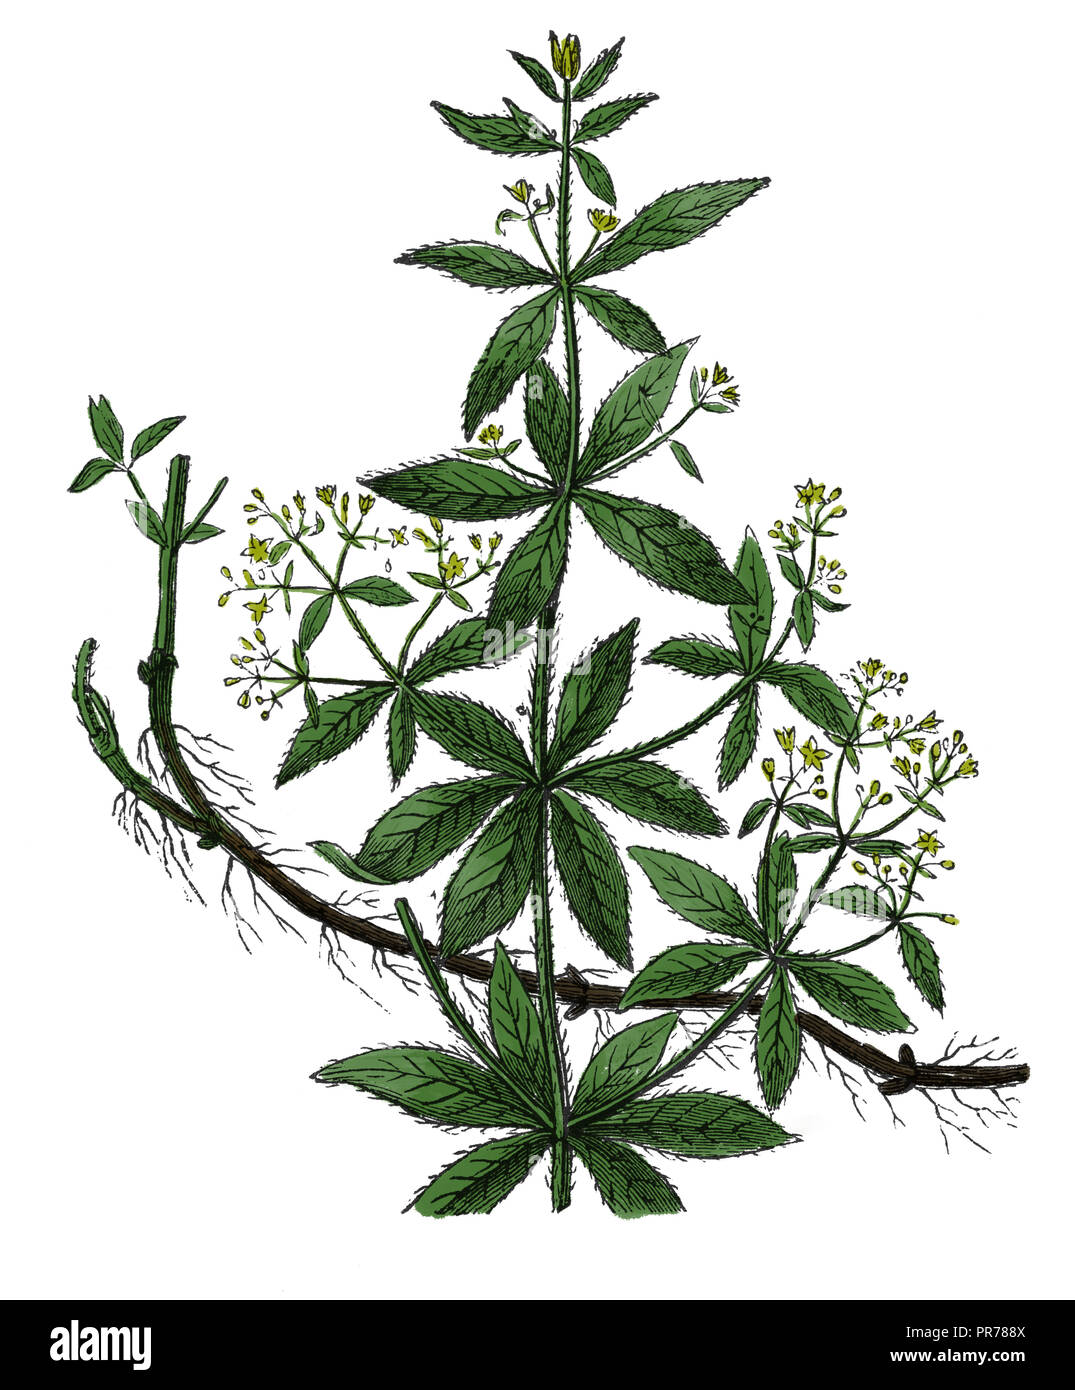 19 Abbildung: rubia tinctorum oder die gemeinsame Krapp oder Dyer Krapp, einer Pflanzenart in der Gattung Rubia. In systematischer Bi veröffentlicht. Stockfoto